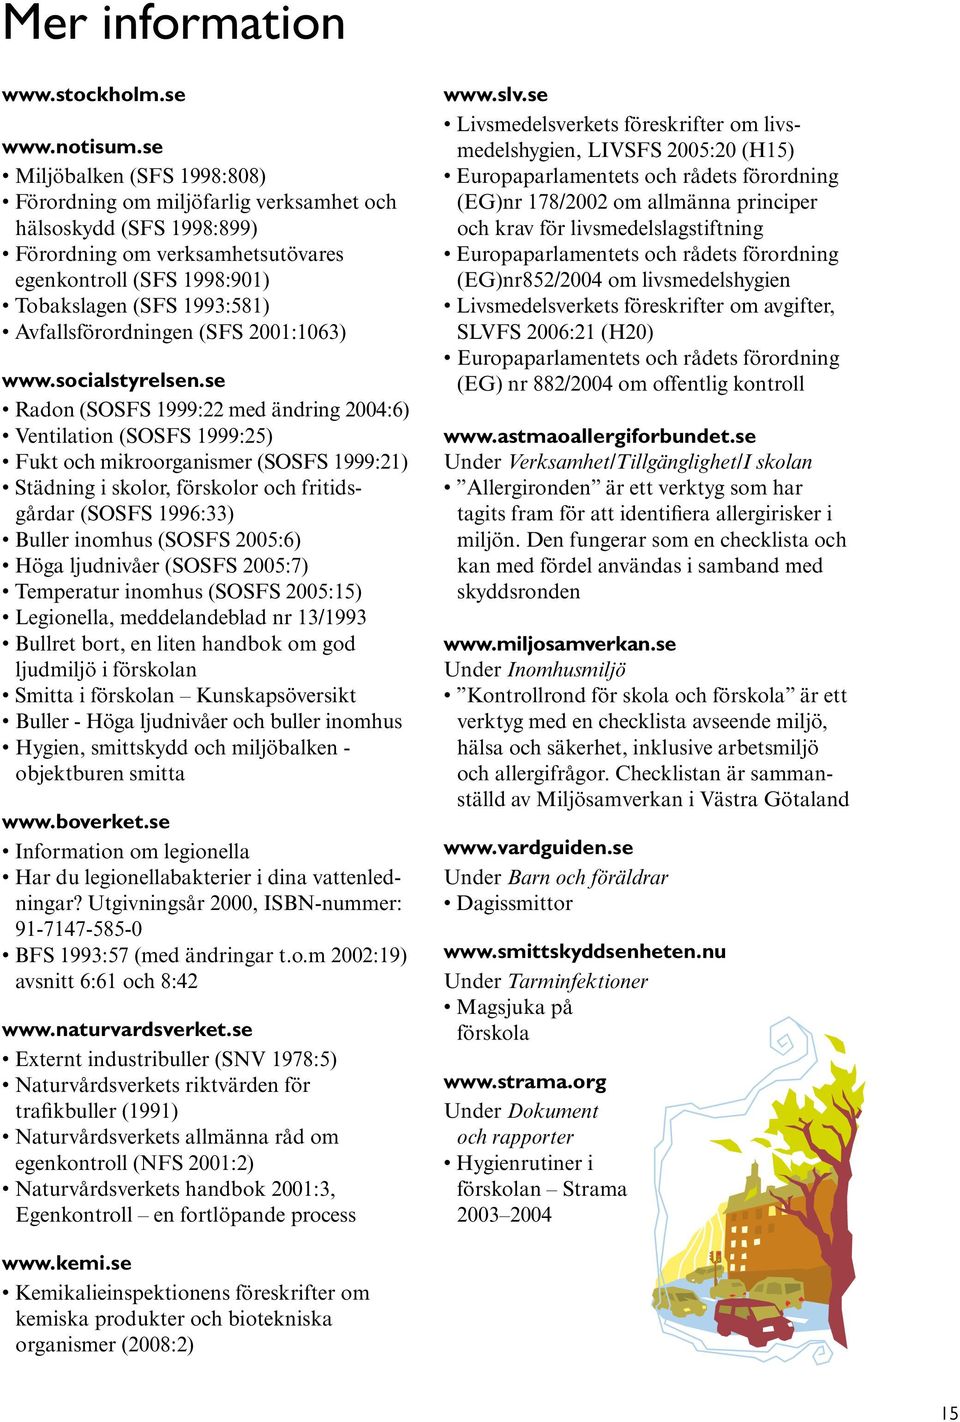 Avfallsförordningen (SFS 2001:1063) www.socialstyrelsen.